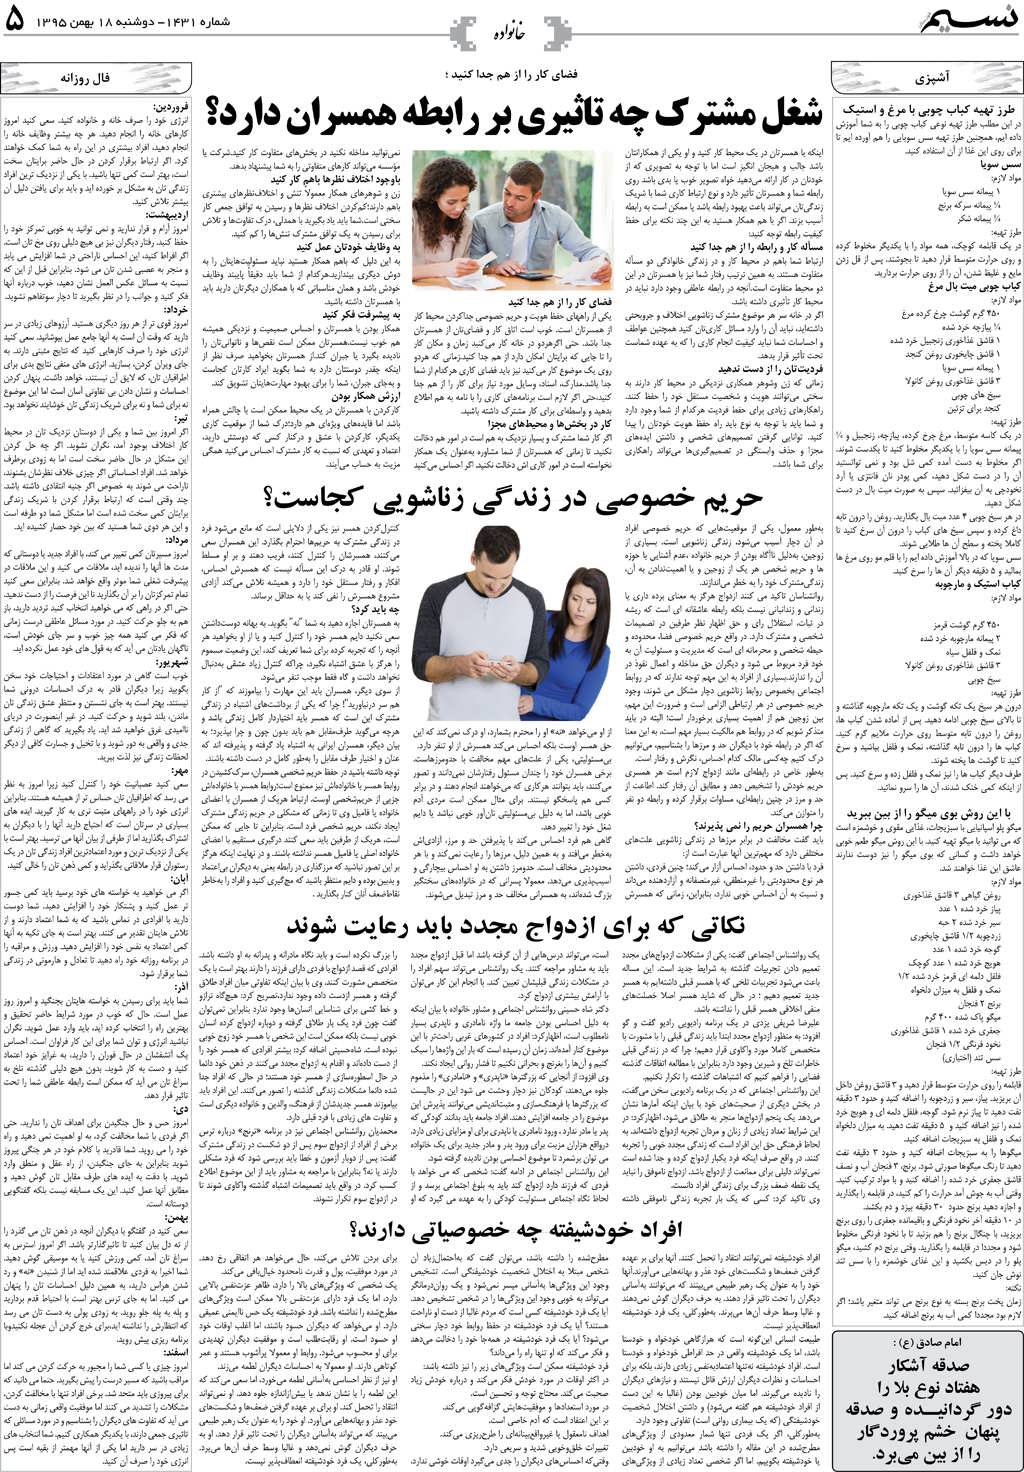 صفحه خانواده روزنامه نسیم شماره 1431